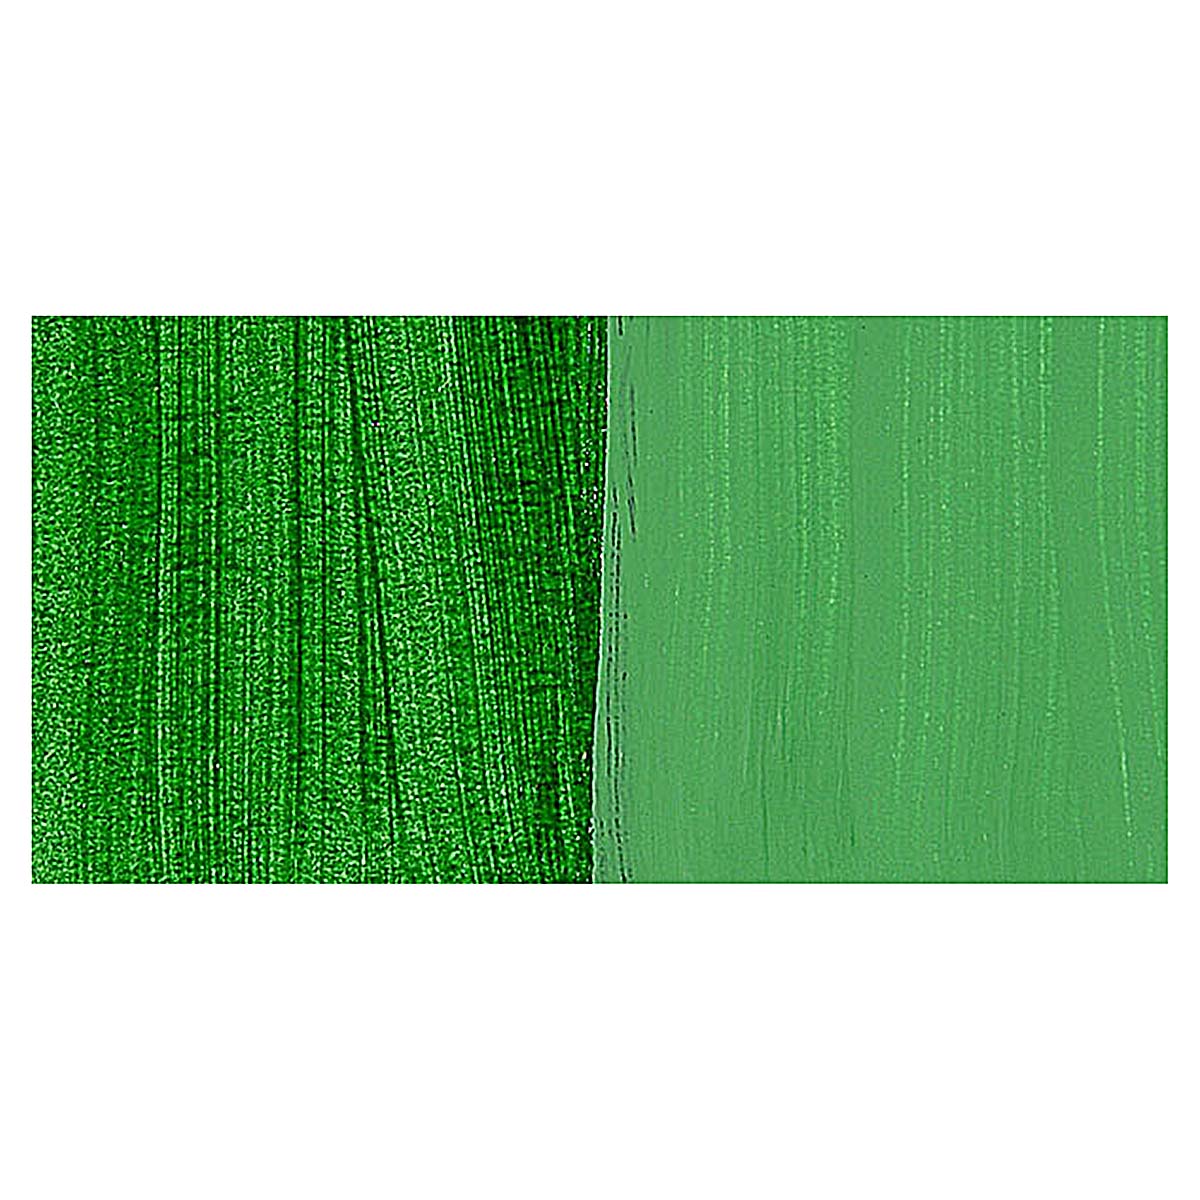 Da Vinci Hooker's Green Dark Artist Fluid Acrylic Paint – 4oz